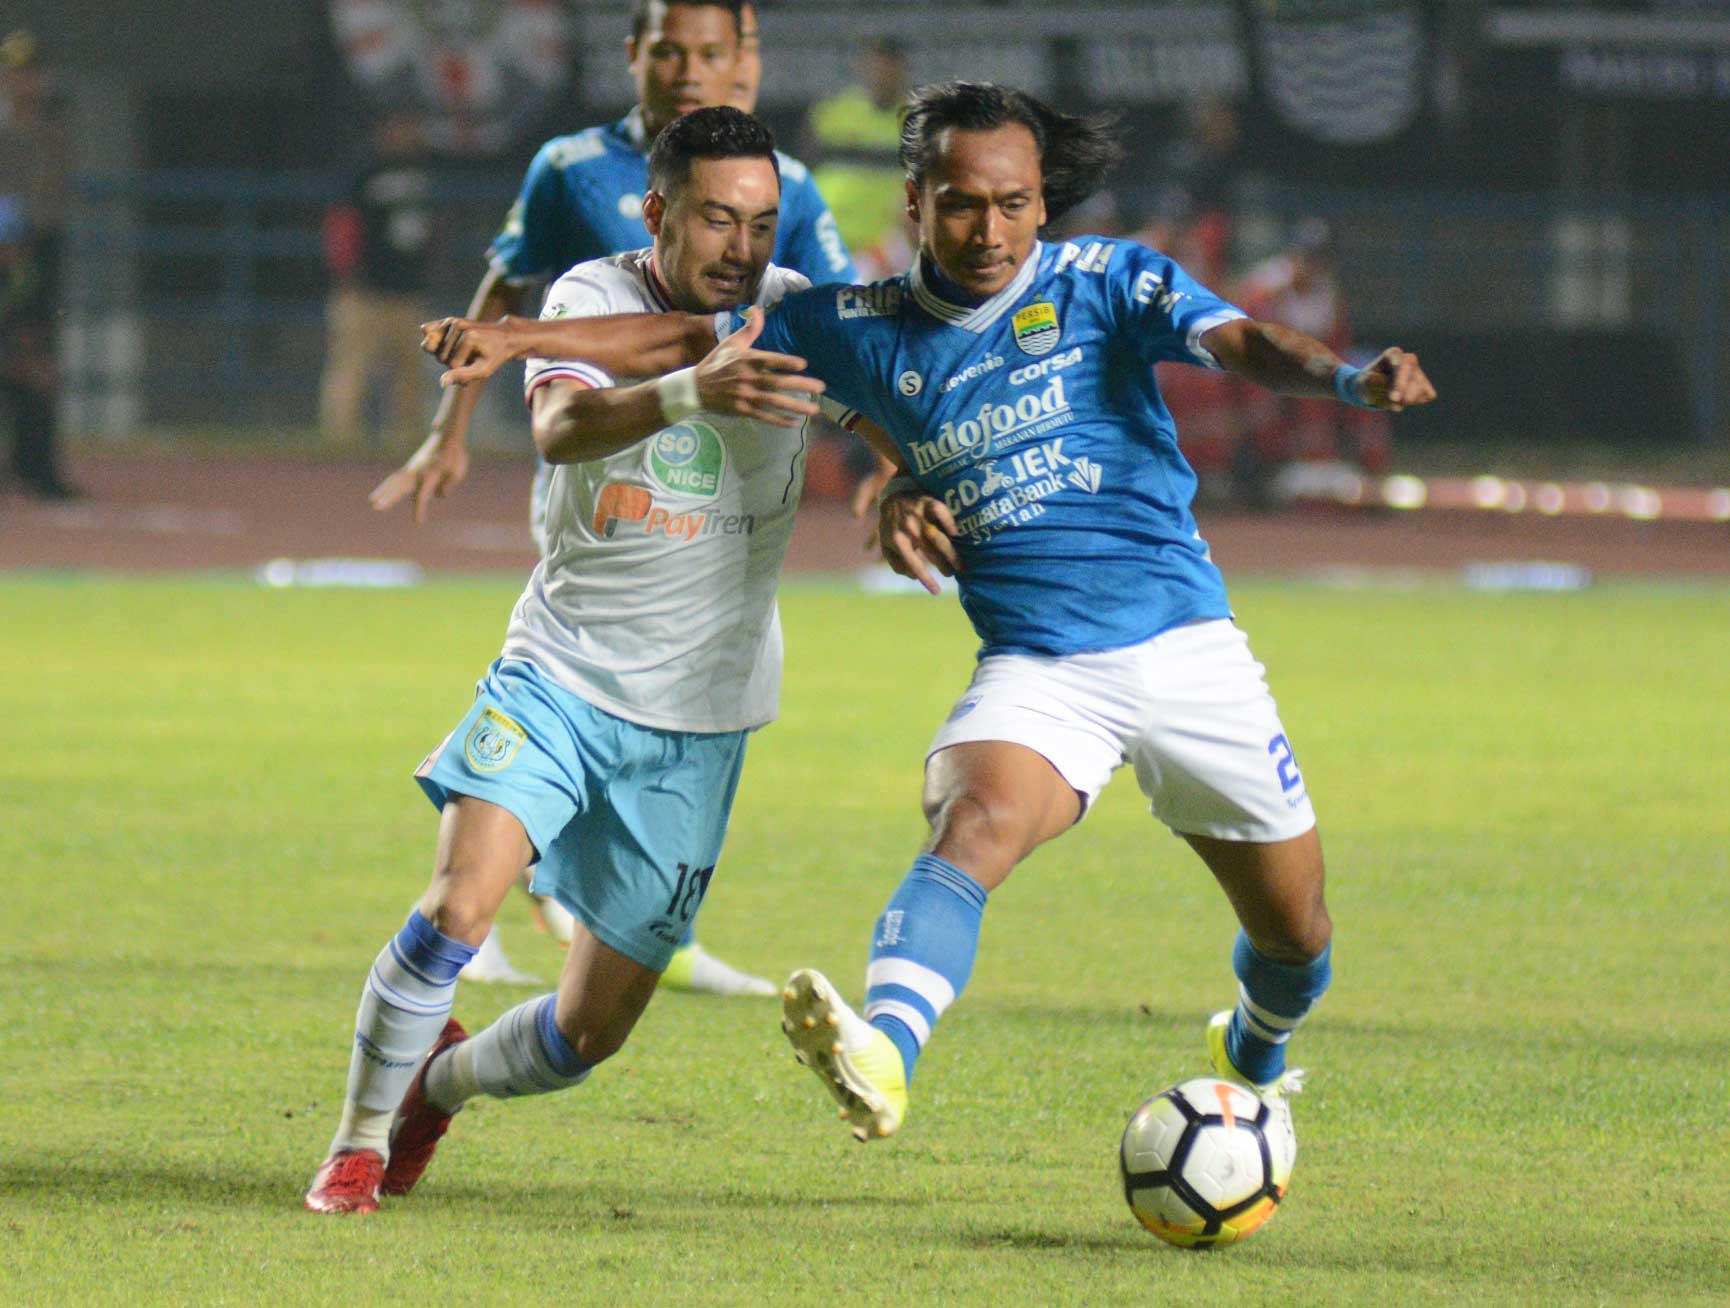 Hariono Persib - Kick Up A Soccer Ball - HD Wallpaper 